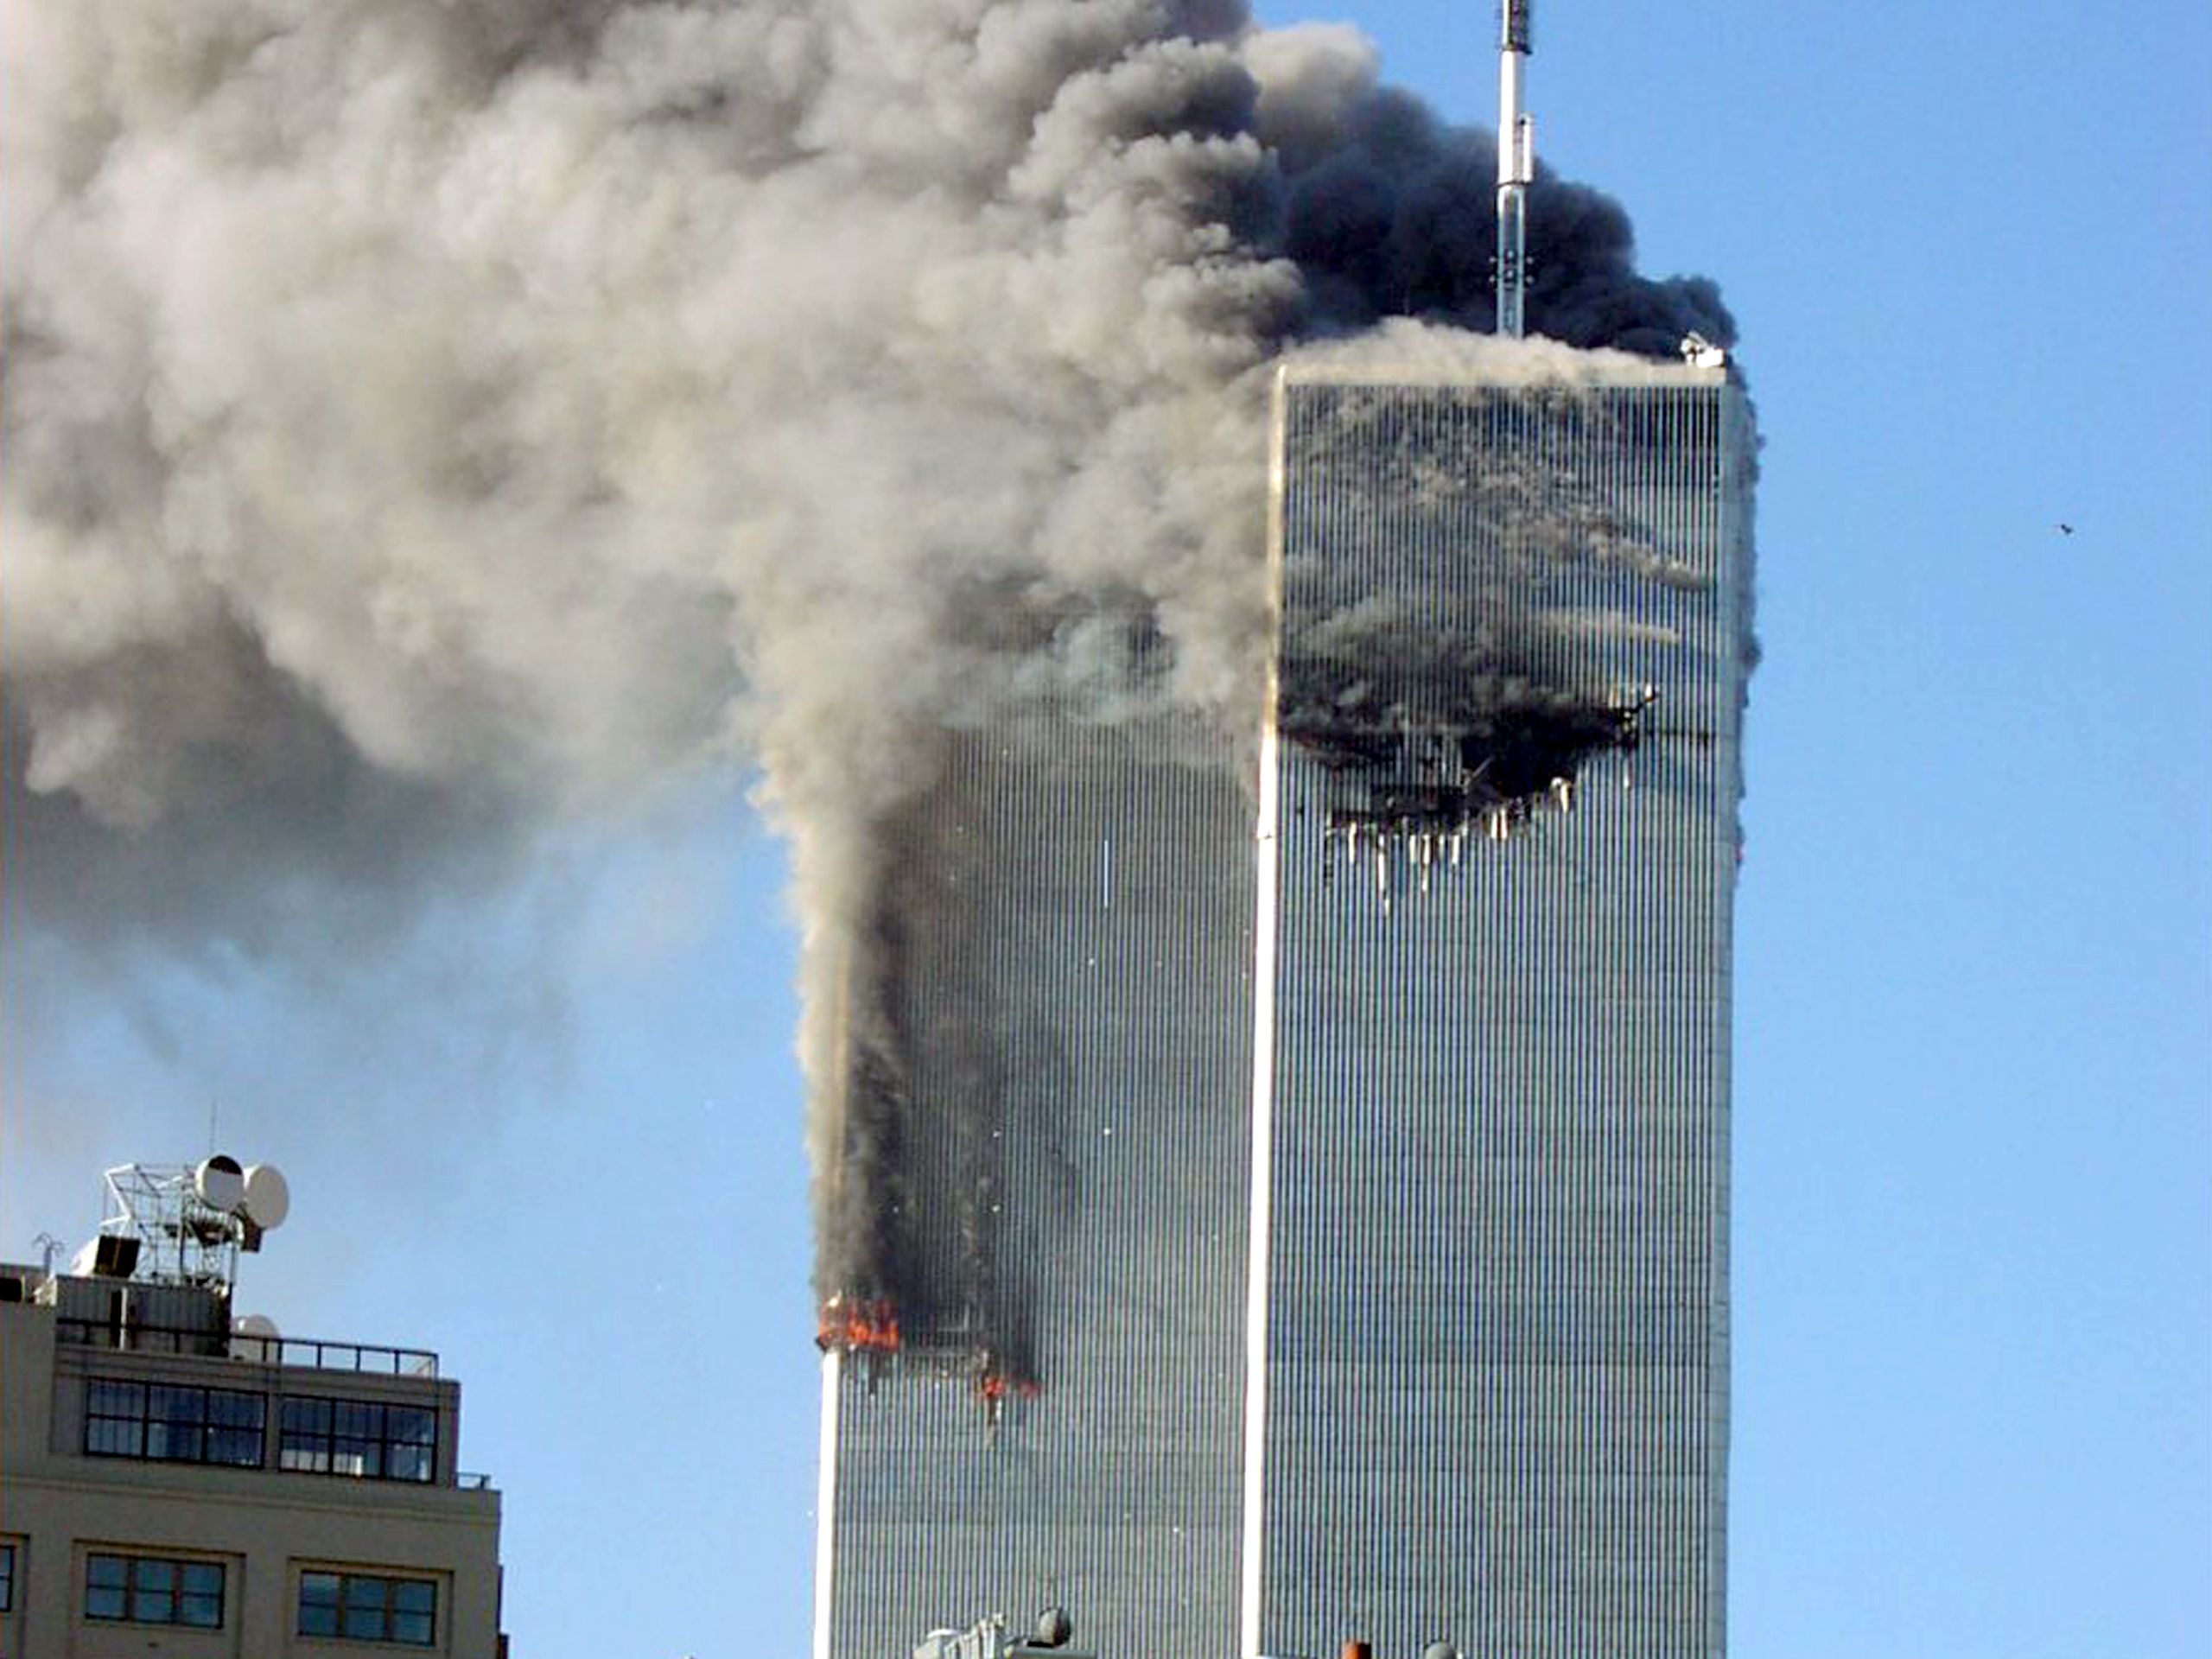 Сколько этажей было в башнях близнецах. Башни-Близнецы 11 сентября 2001. ВТЦ Нью-Йорк башни Близнецы 2001. Небоскребы Близнецы 11 сентября. ВТЦ Нью-Йорк 2020.